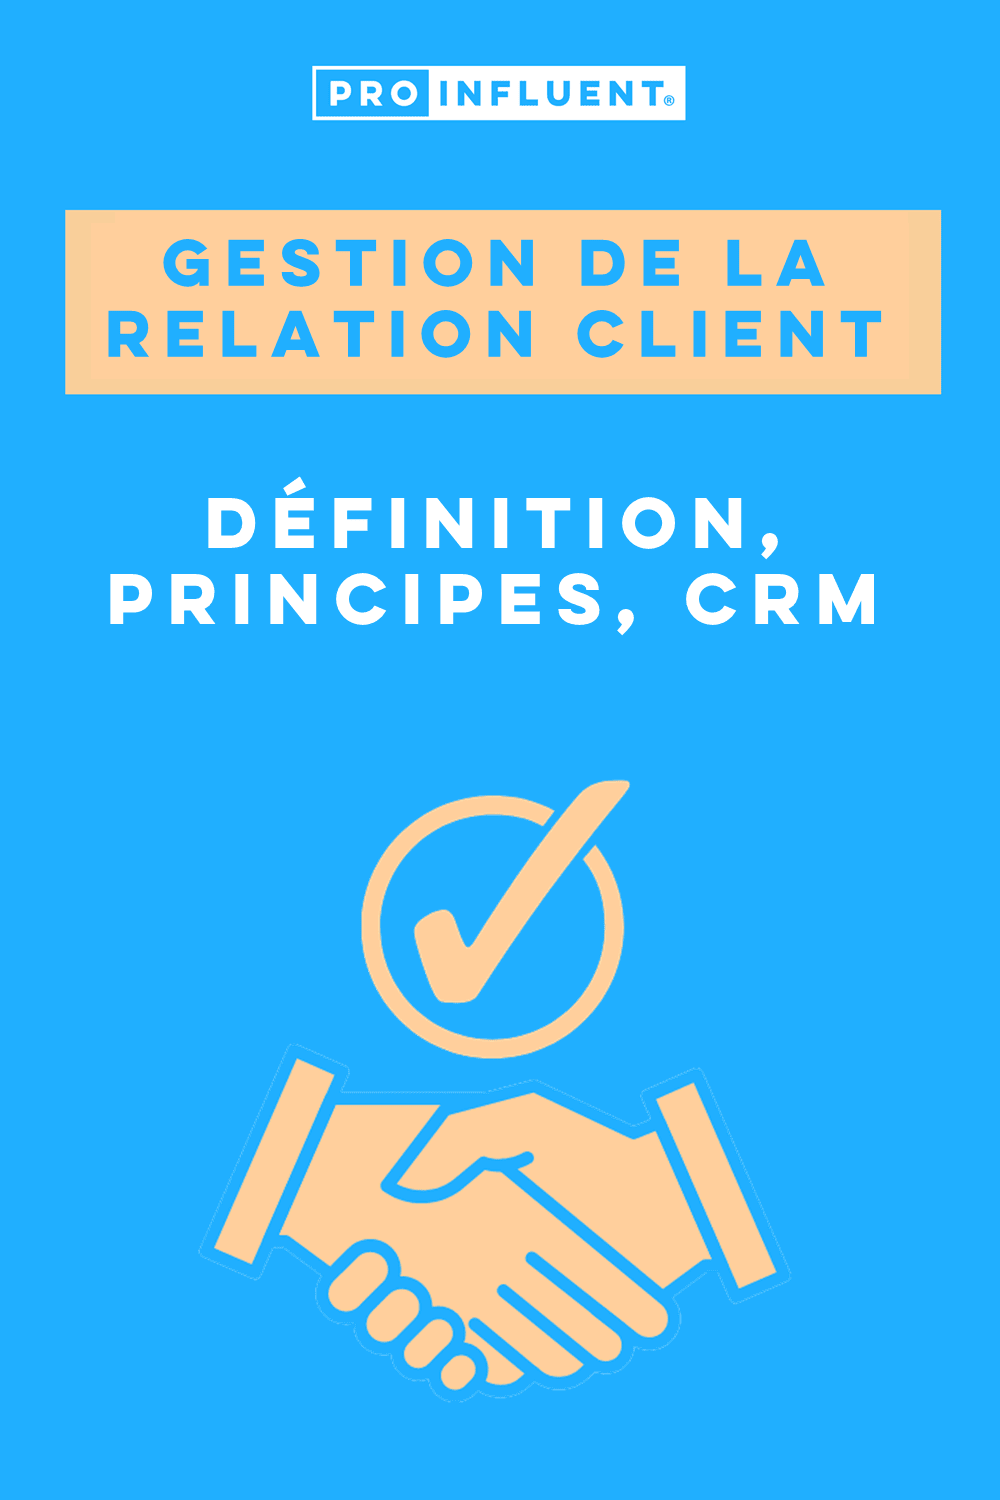 Gestión de la relación con el cliente: ¡todo lo que necesita saber! Definición, principios, CRM